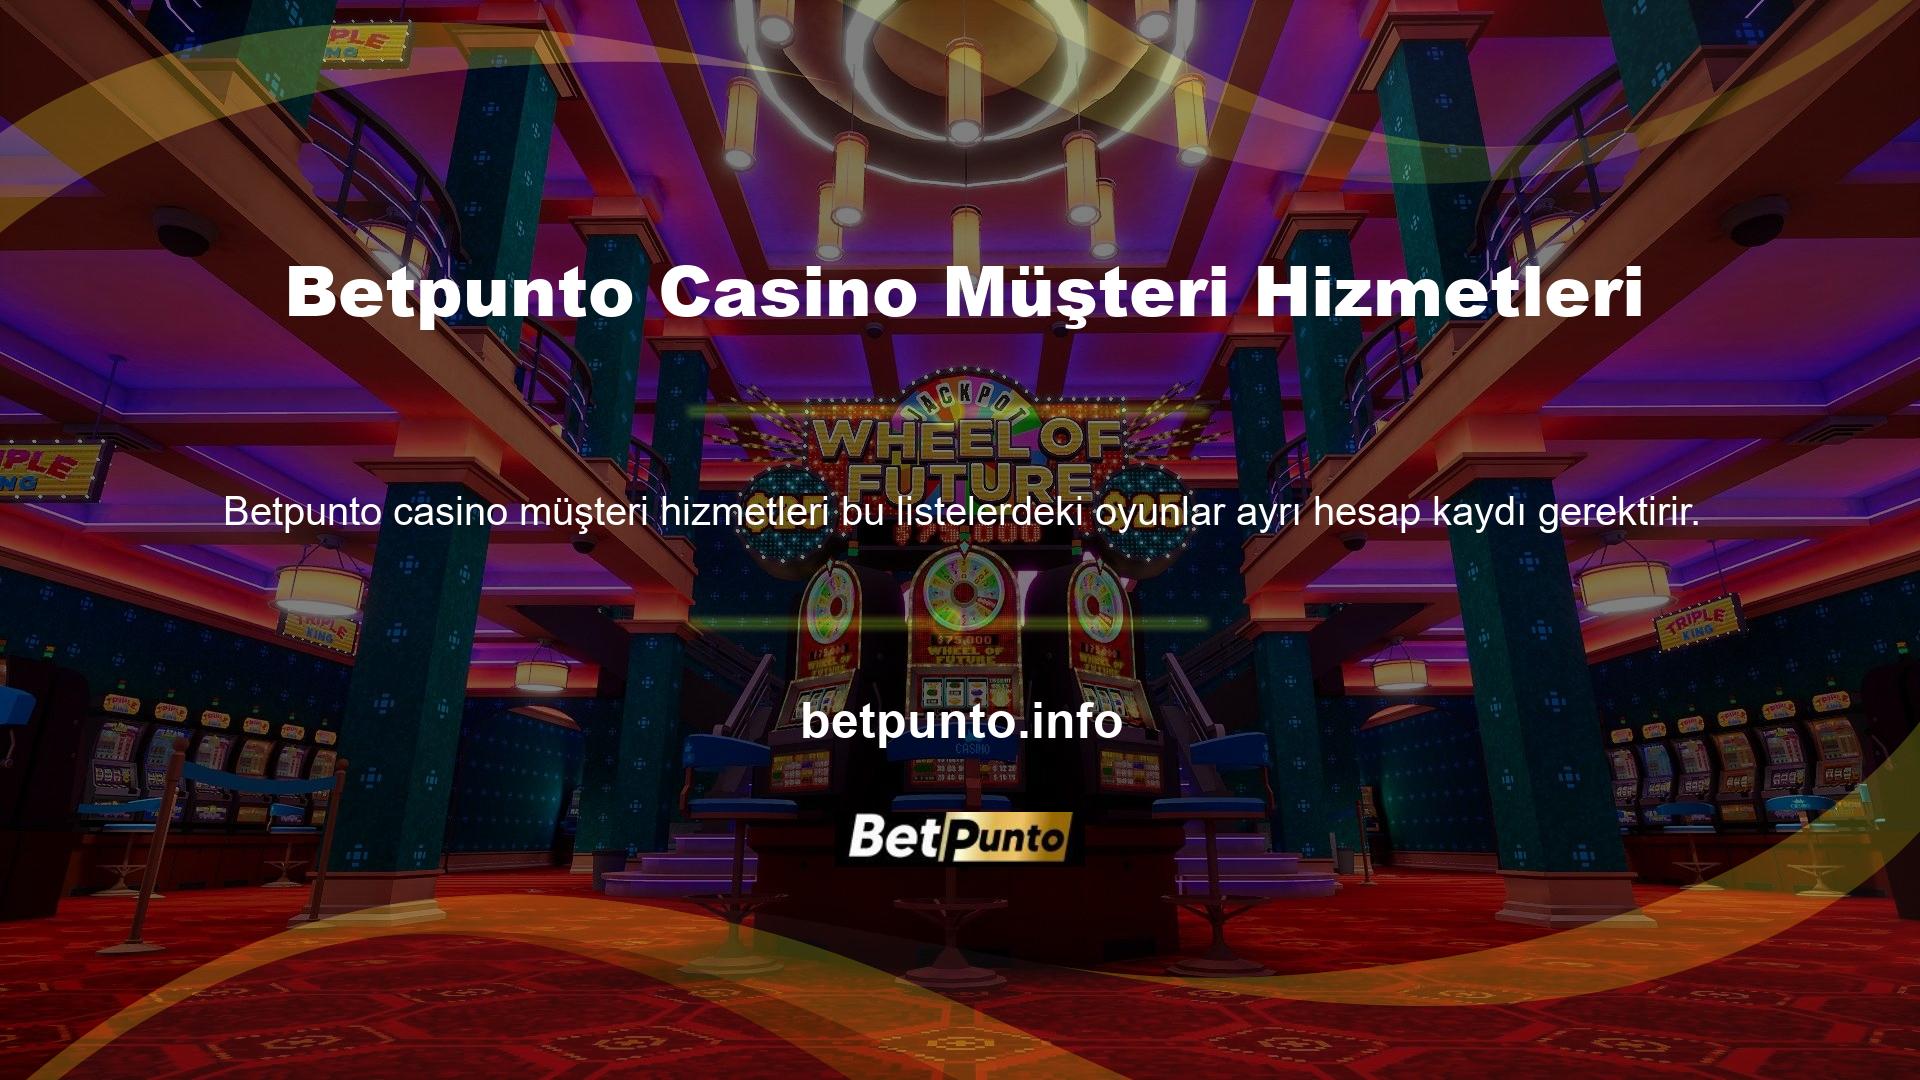 Casino casino kisvesi altında Betpunto Casino müşteri hizmetlerine para yatırmalısınız